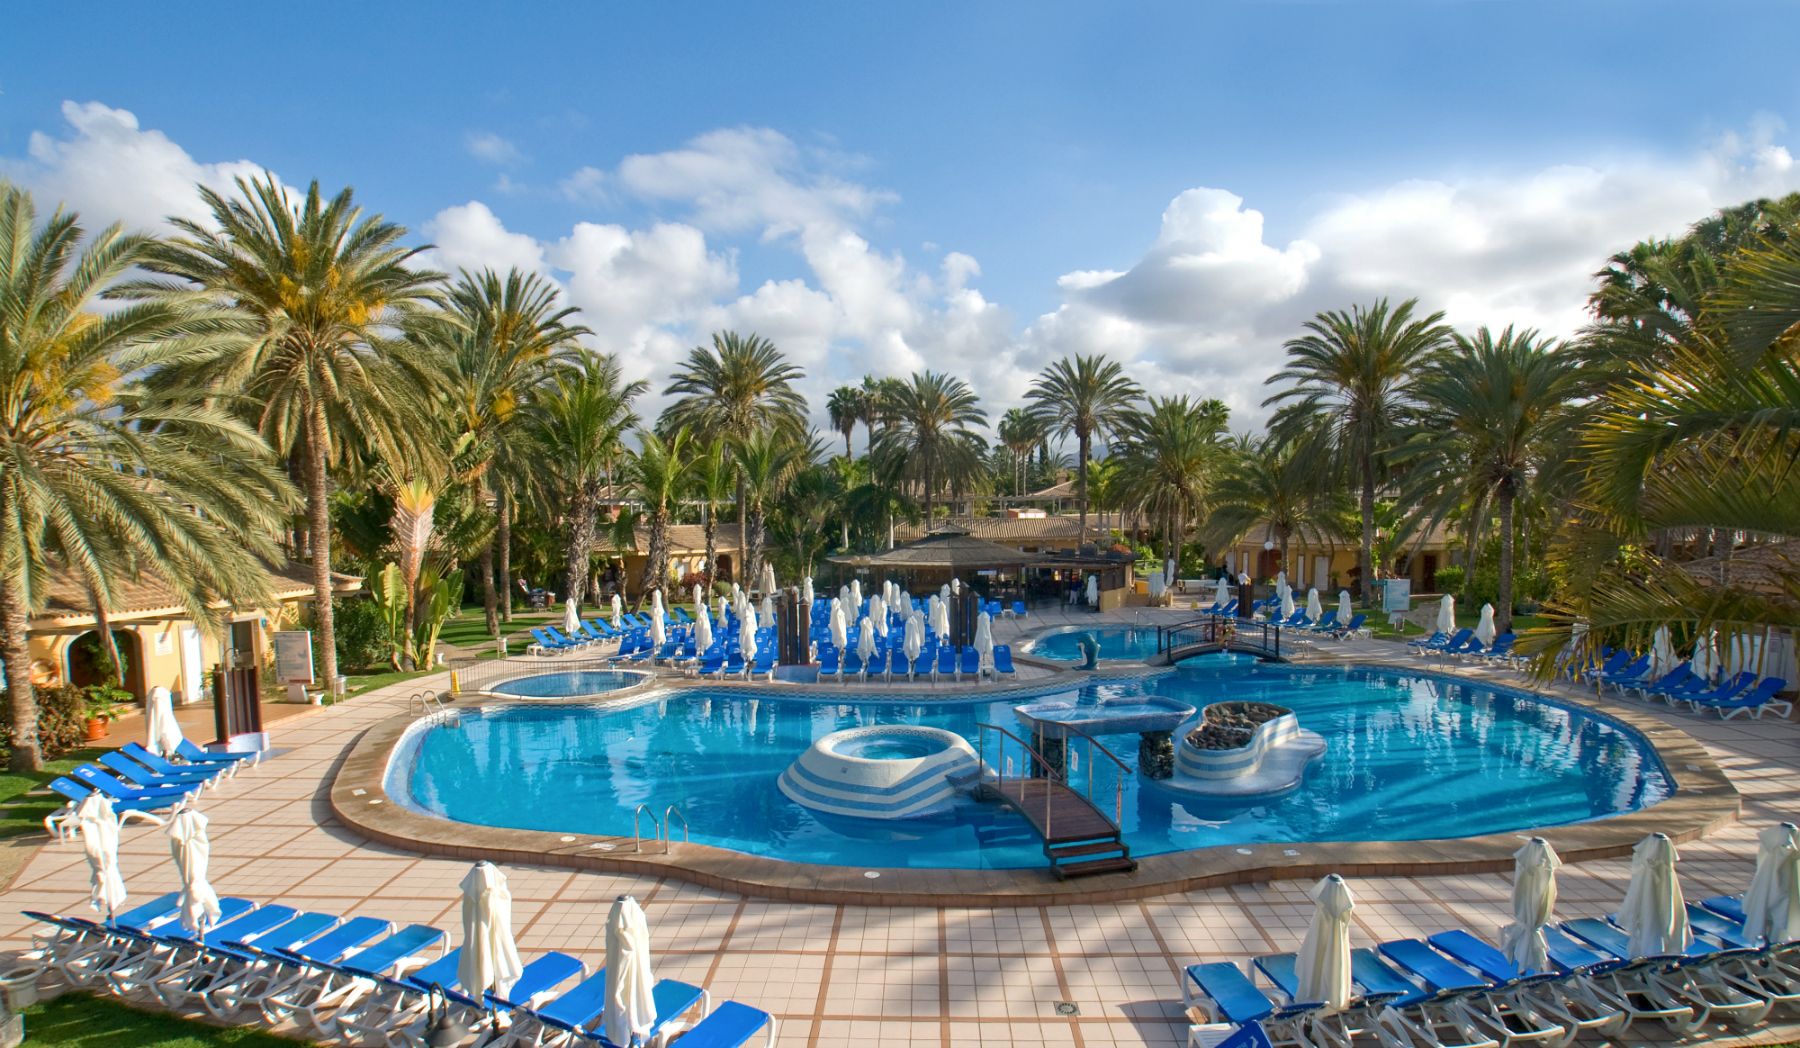 2016/09/hotel-dunas-suites-villas-resort-pool-g.jpg